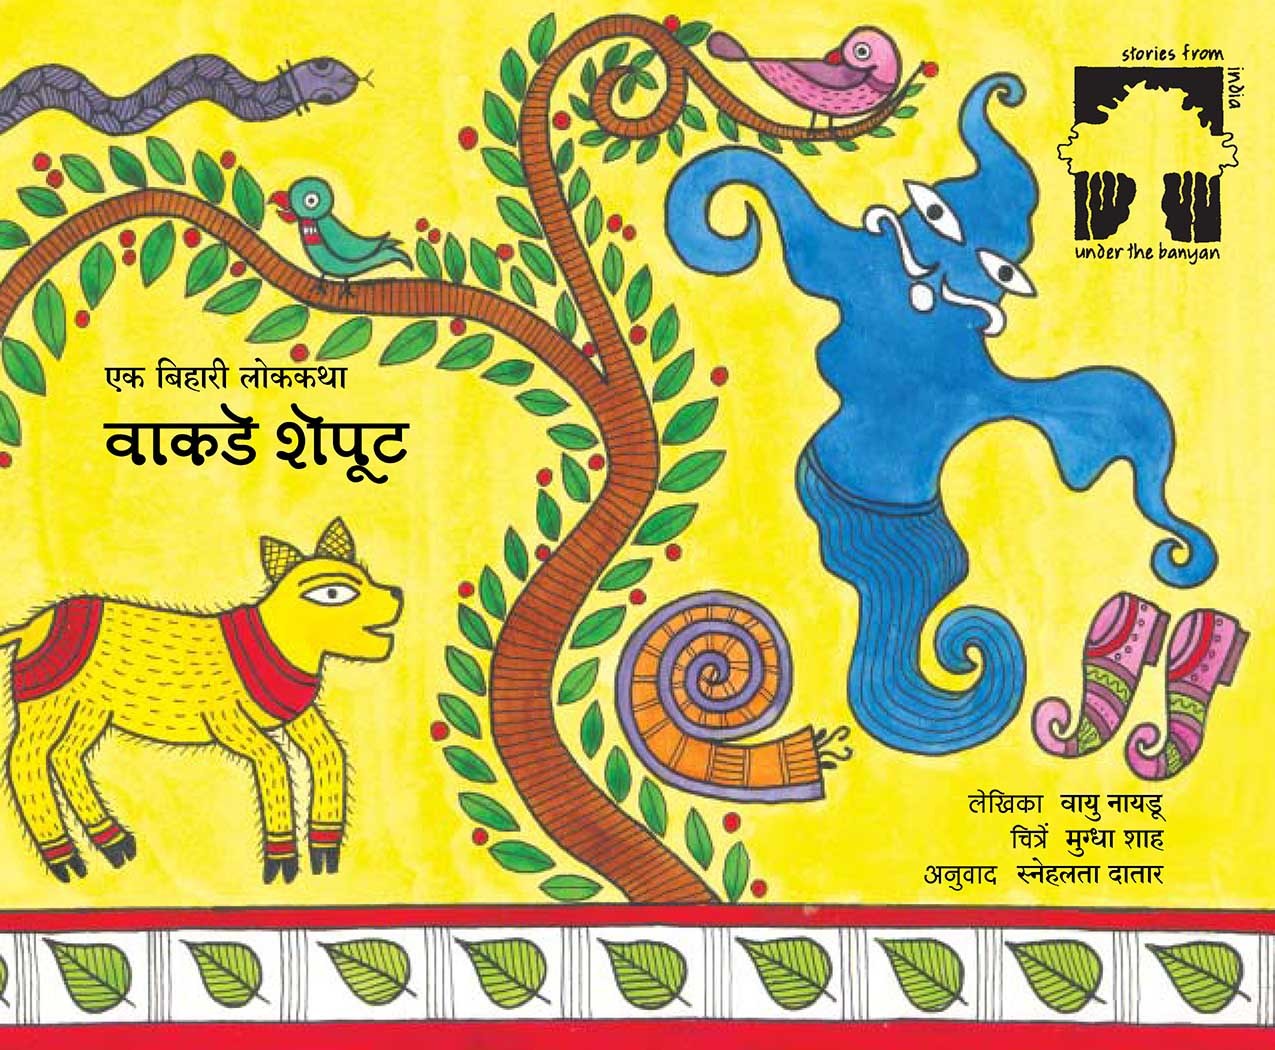 A Curly Tale/Vankde Sheput (Marathi)